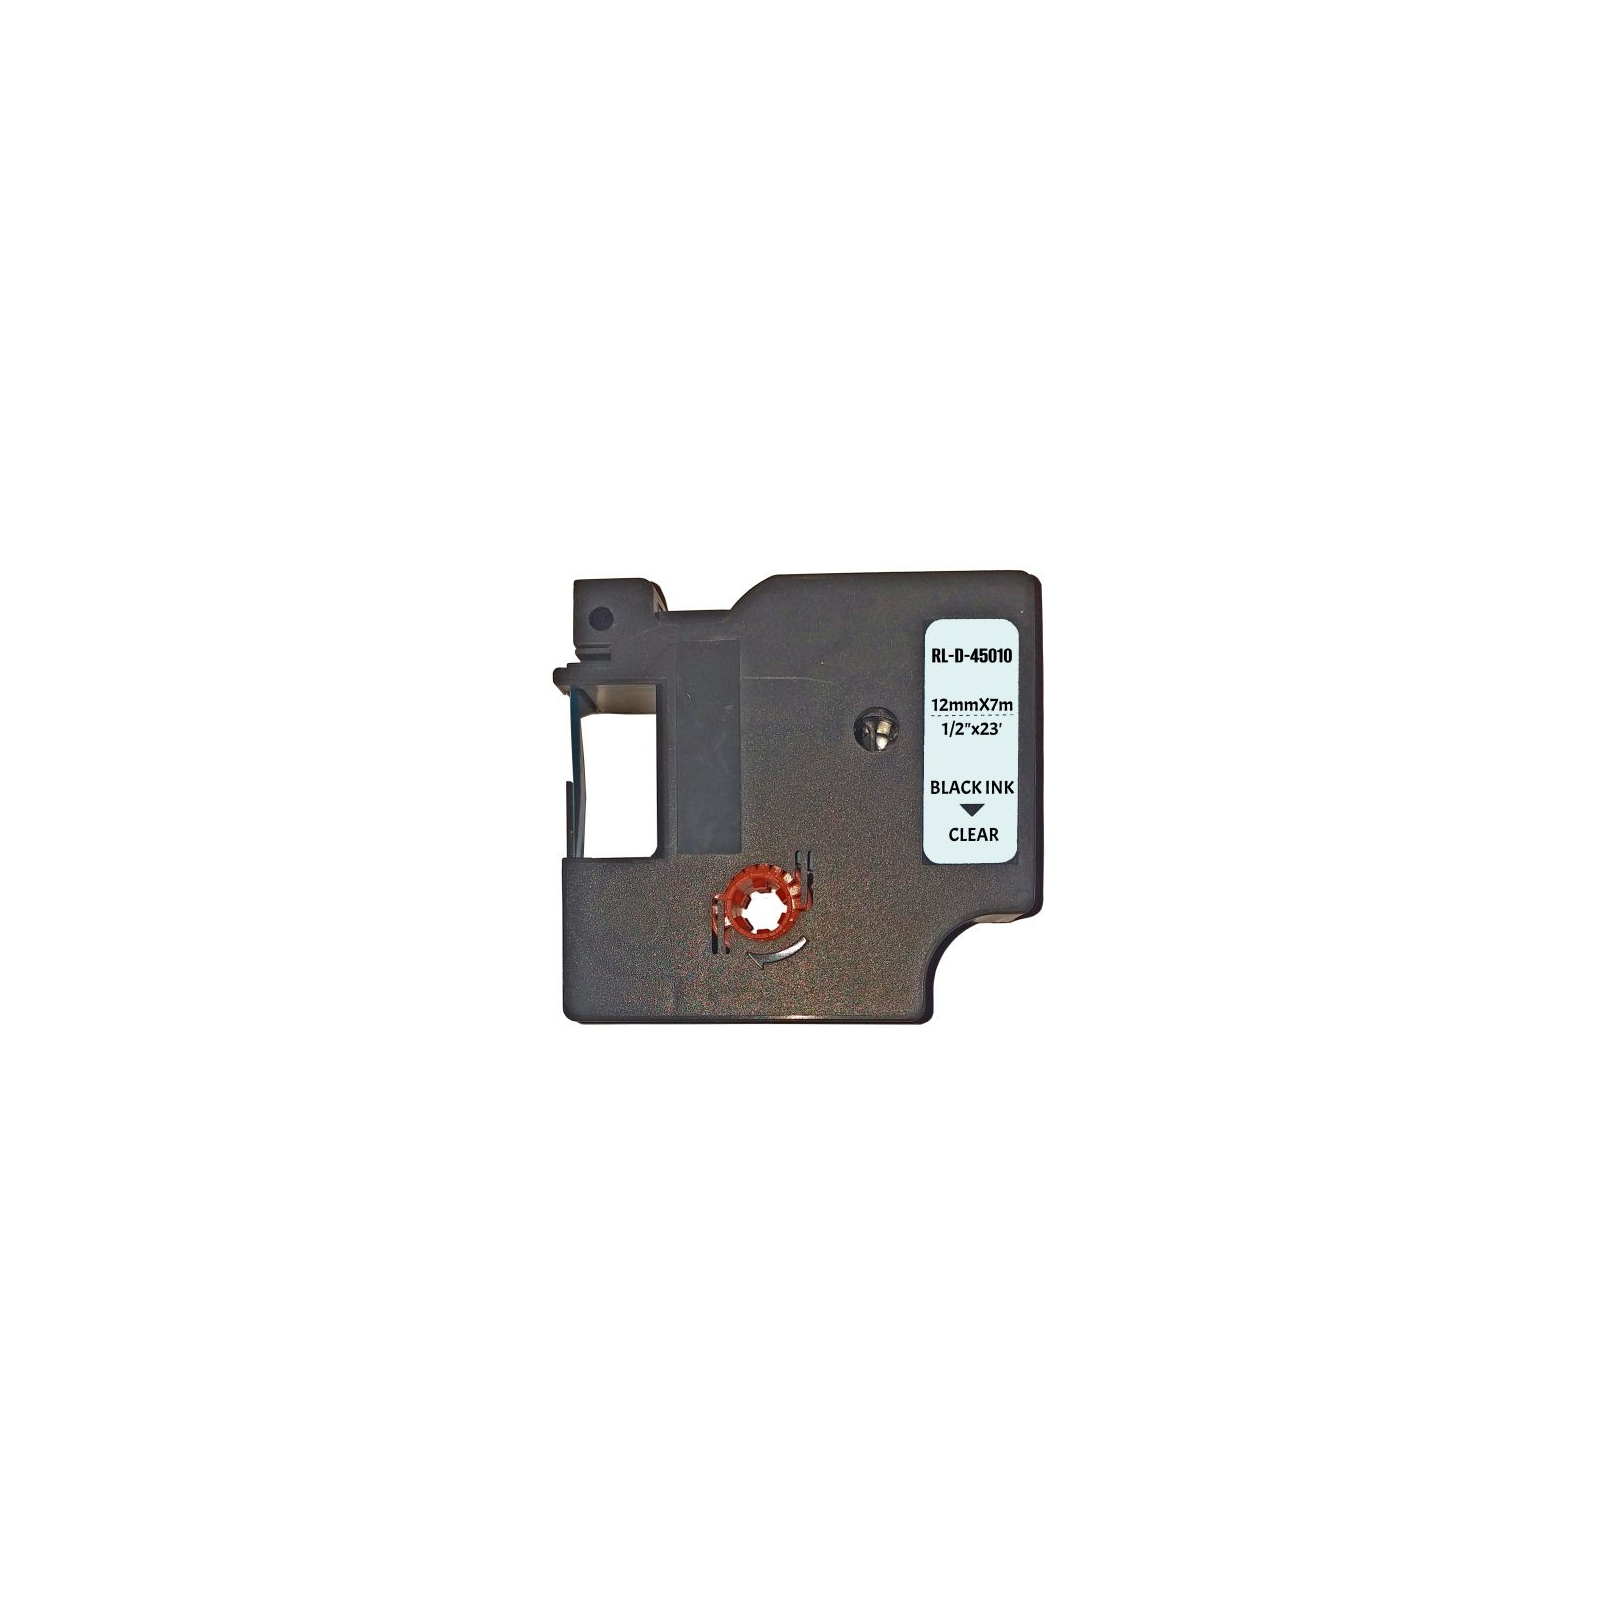 Лента для принтера этикеток UKRMARK D-45010P-BK/CL, совместима с DYMO 45010 / S0720500, для серии D1. 12мм х 7м. black on transparen (D-45010P-BK/CL)